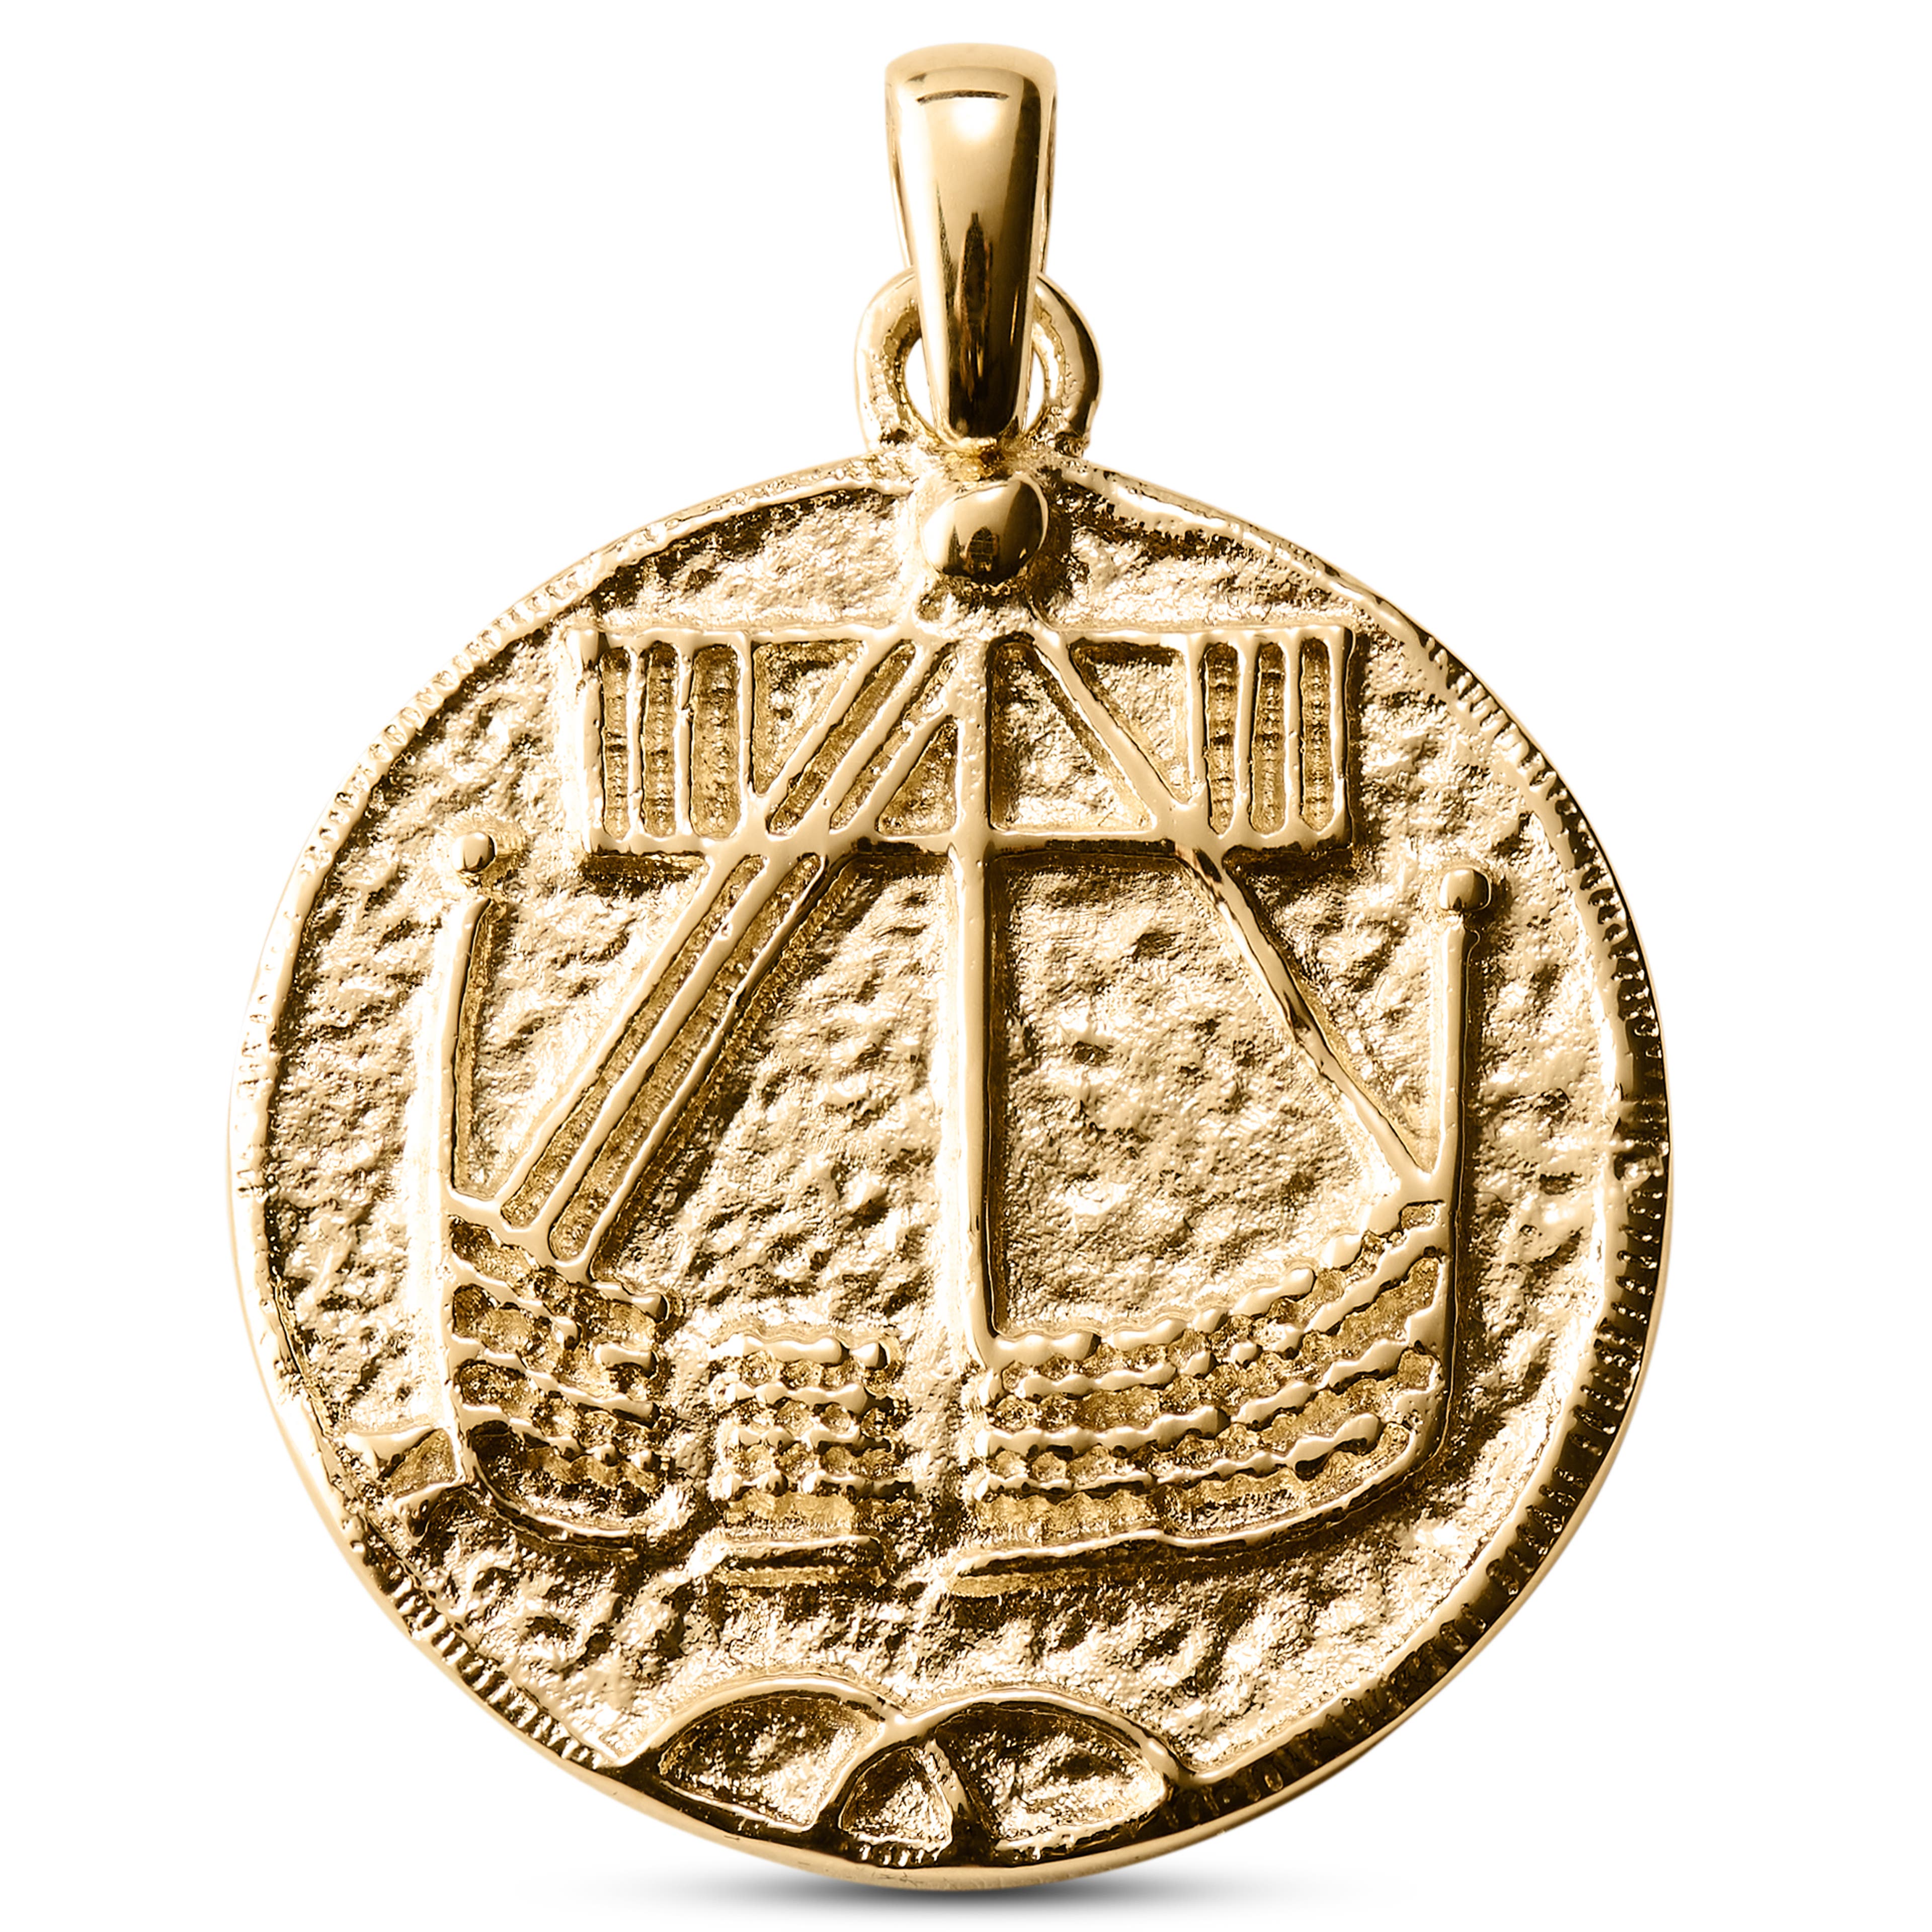 Lena Makt Gold-Tone Viking Coin Pendant